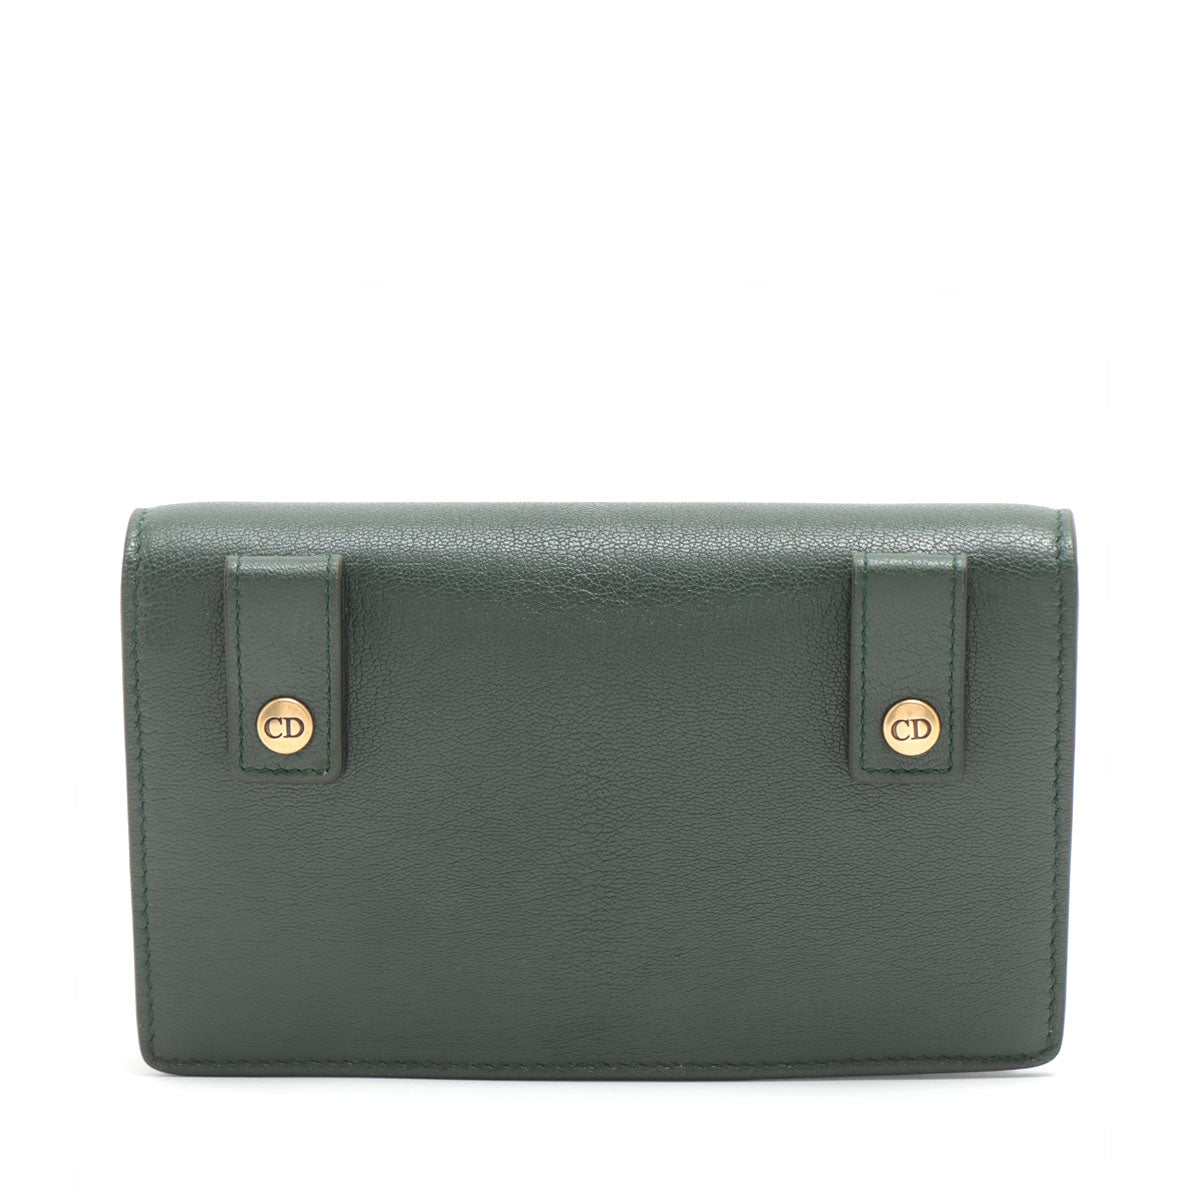 Christian Dior Saddle Bag Leather Waist bag Green